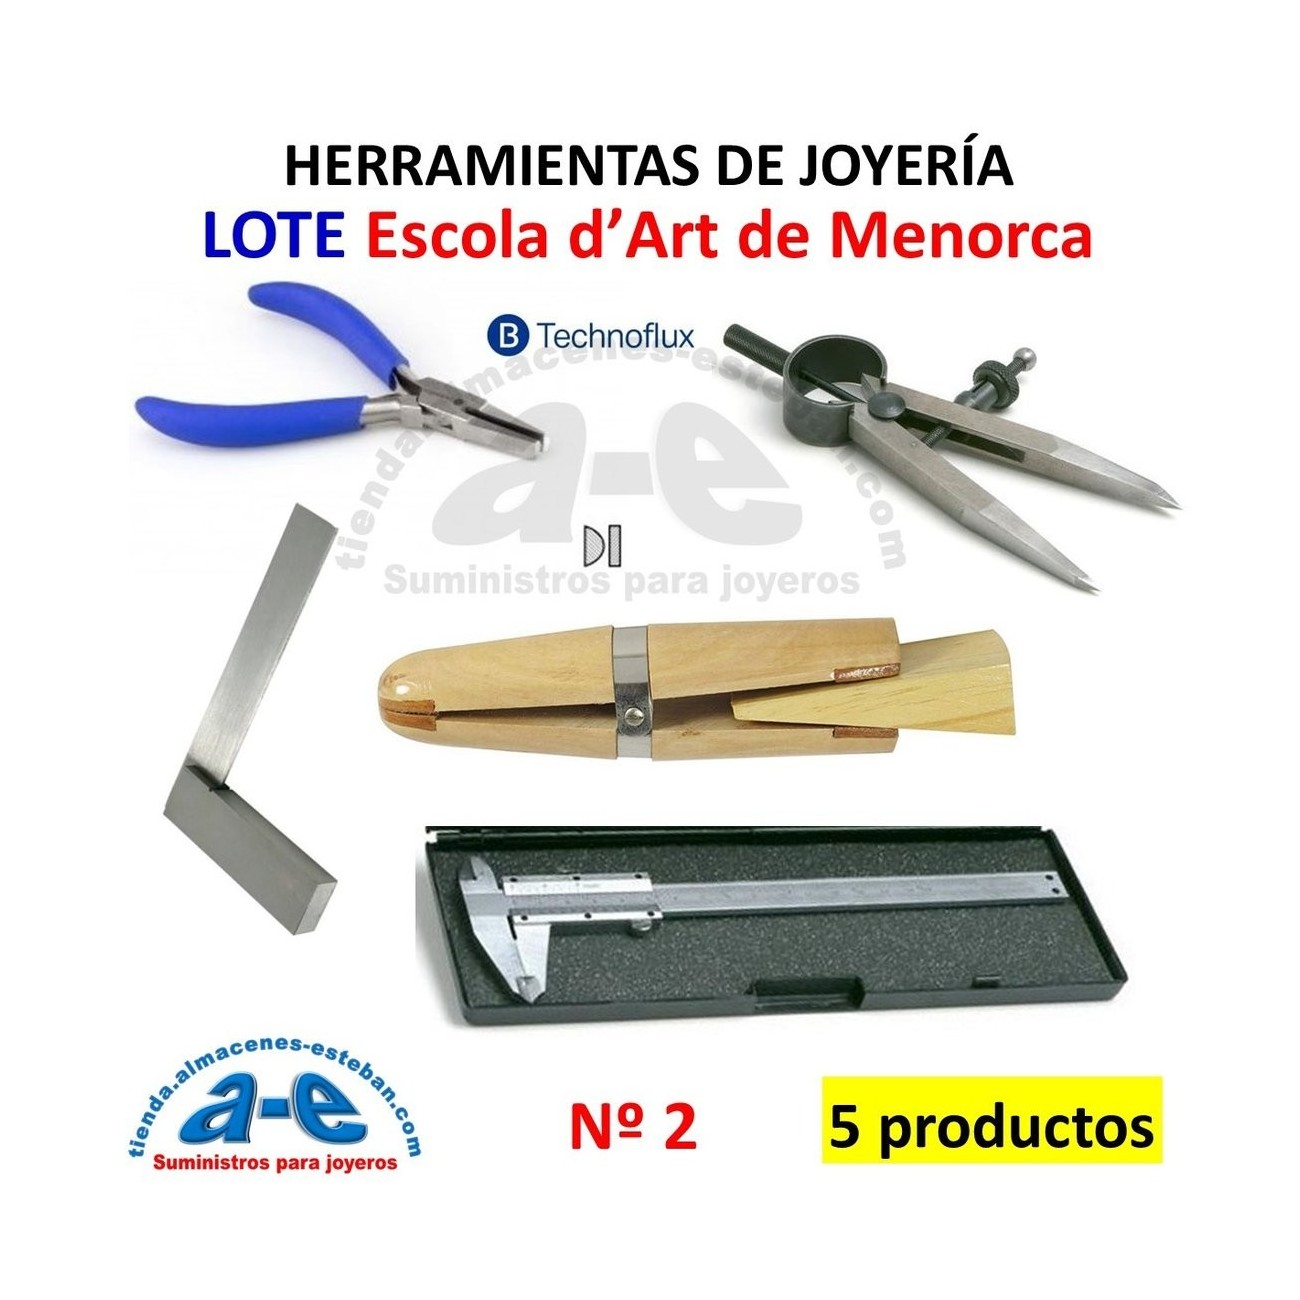 LOTE HERRAMIENTA JOYERIA - Escola d'Art de Menorca 2